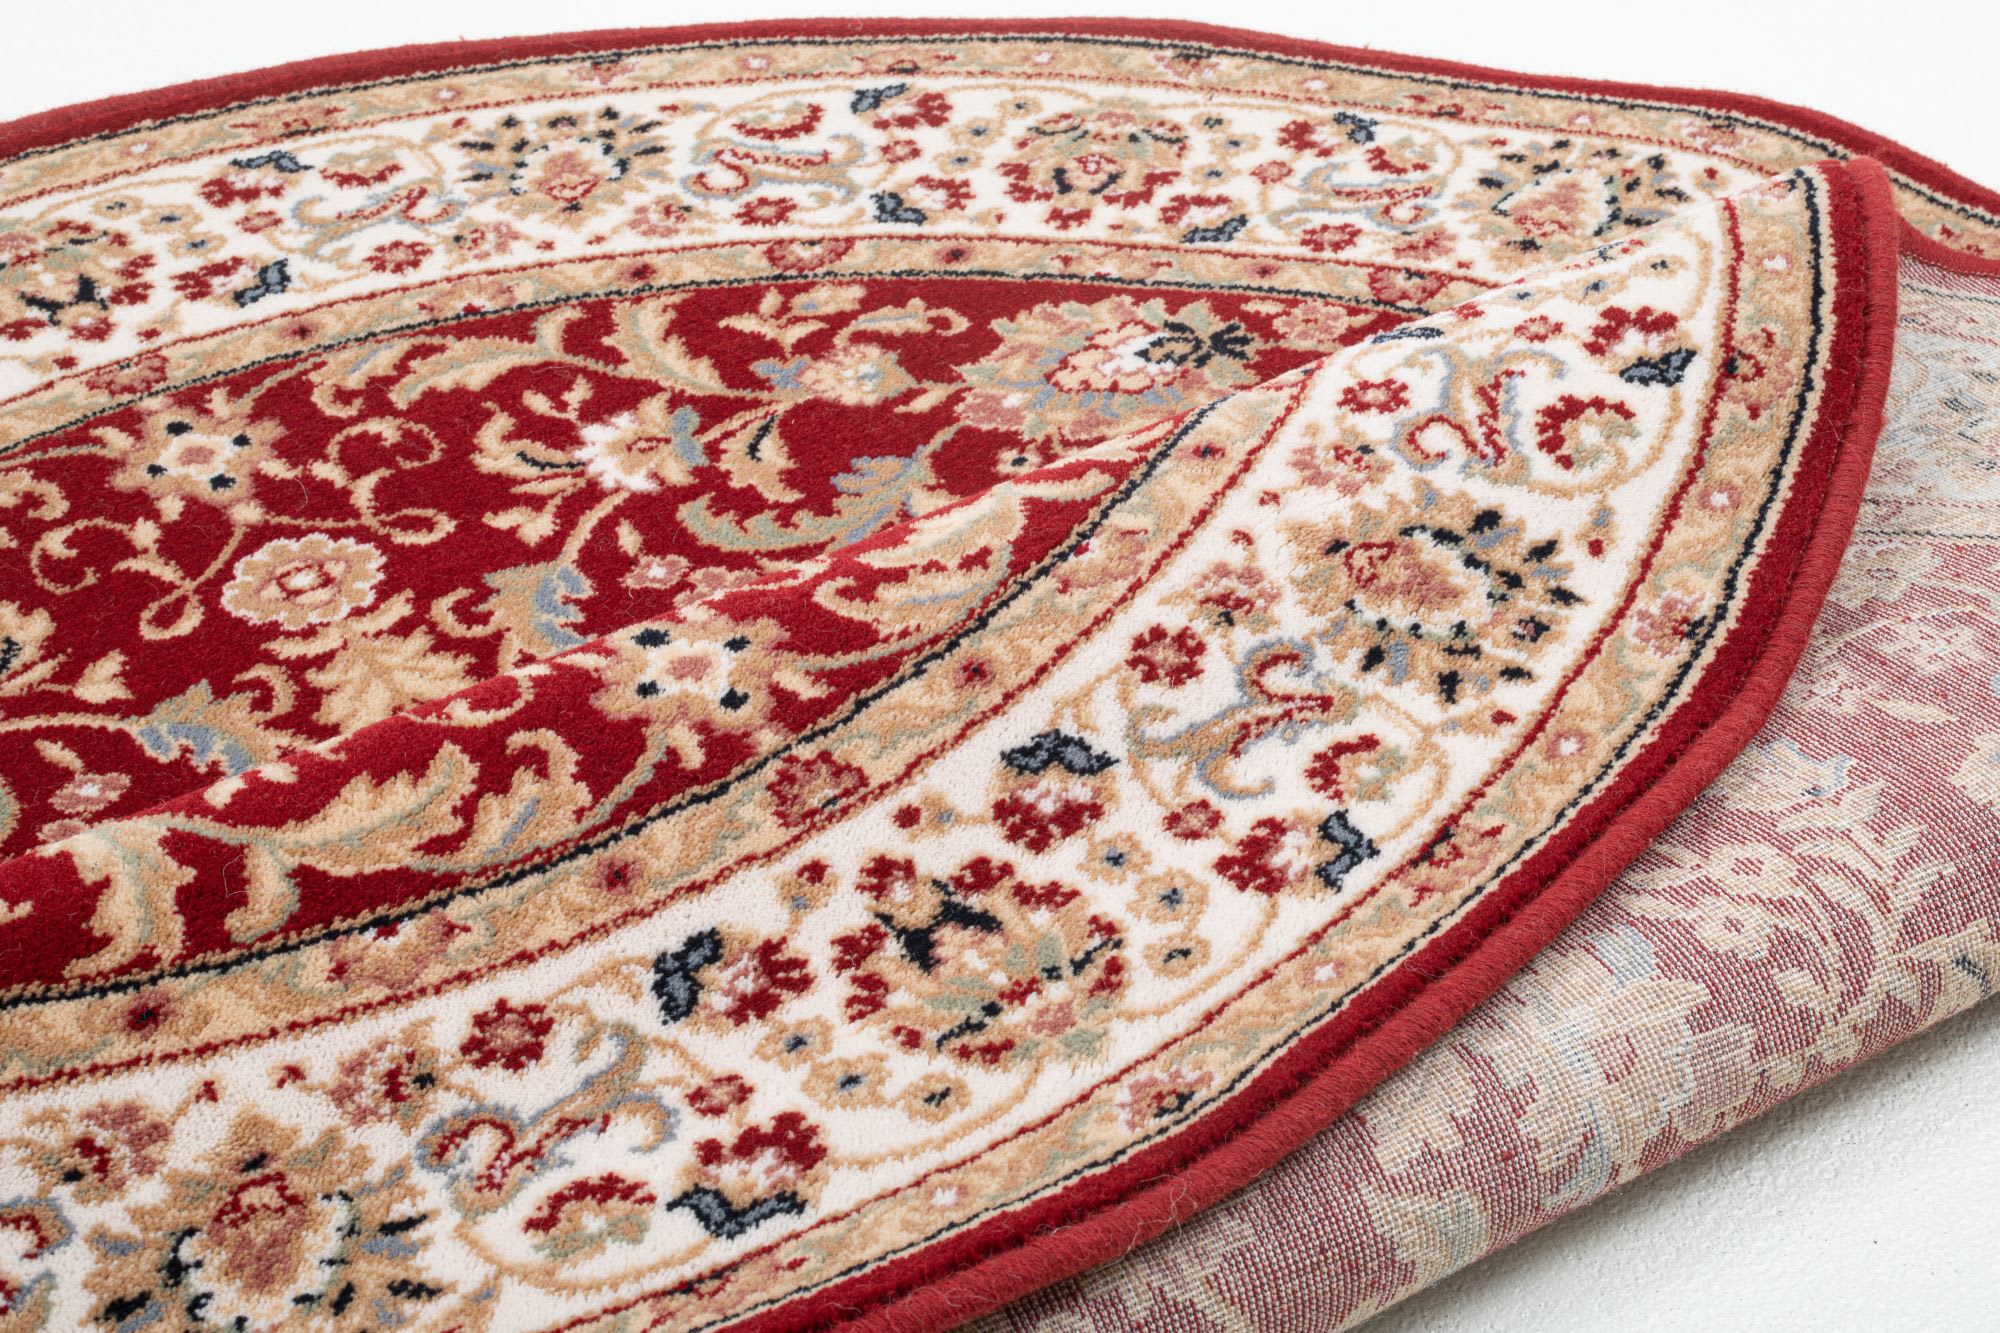 Tapis d'orient floral, tissé, laine naturelle rouge Diam 133 cm